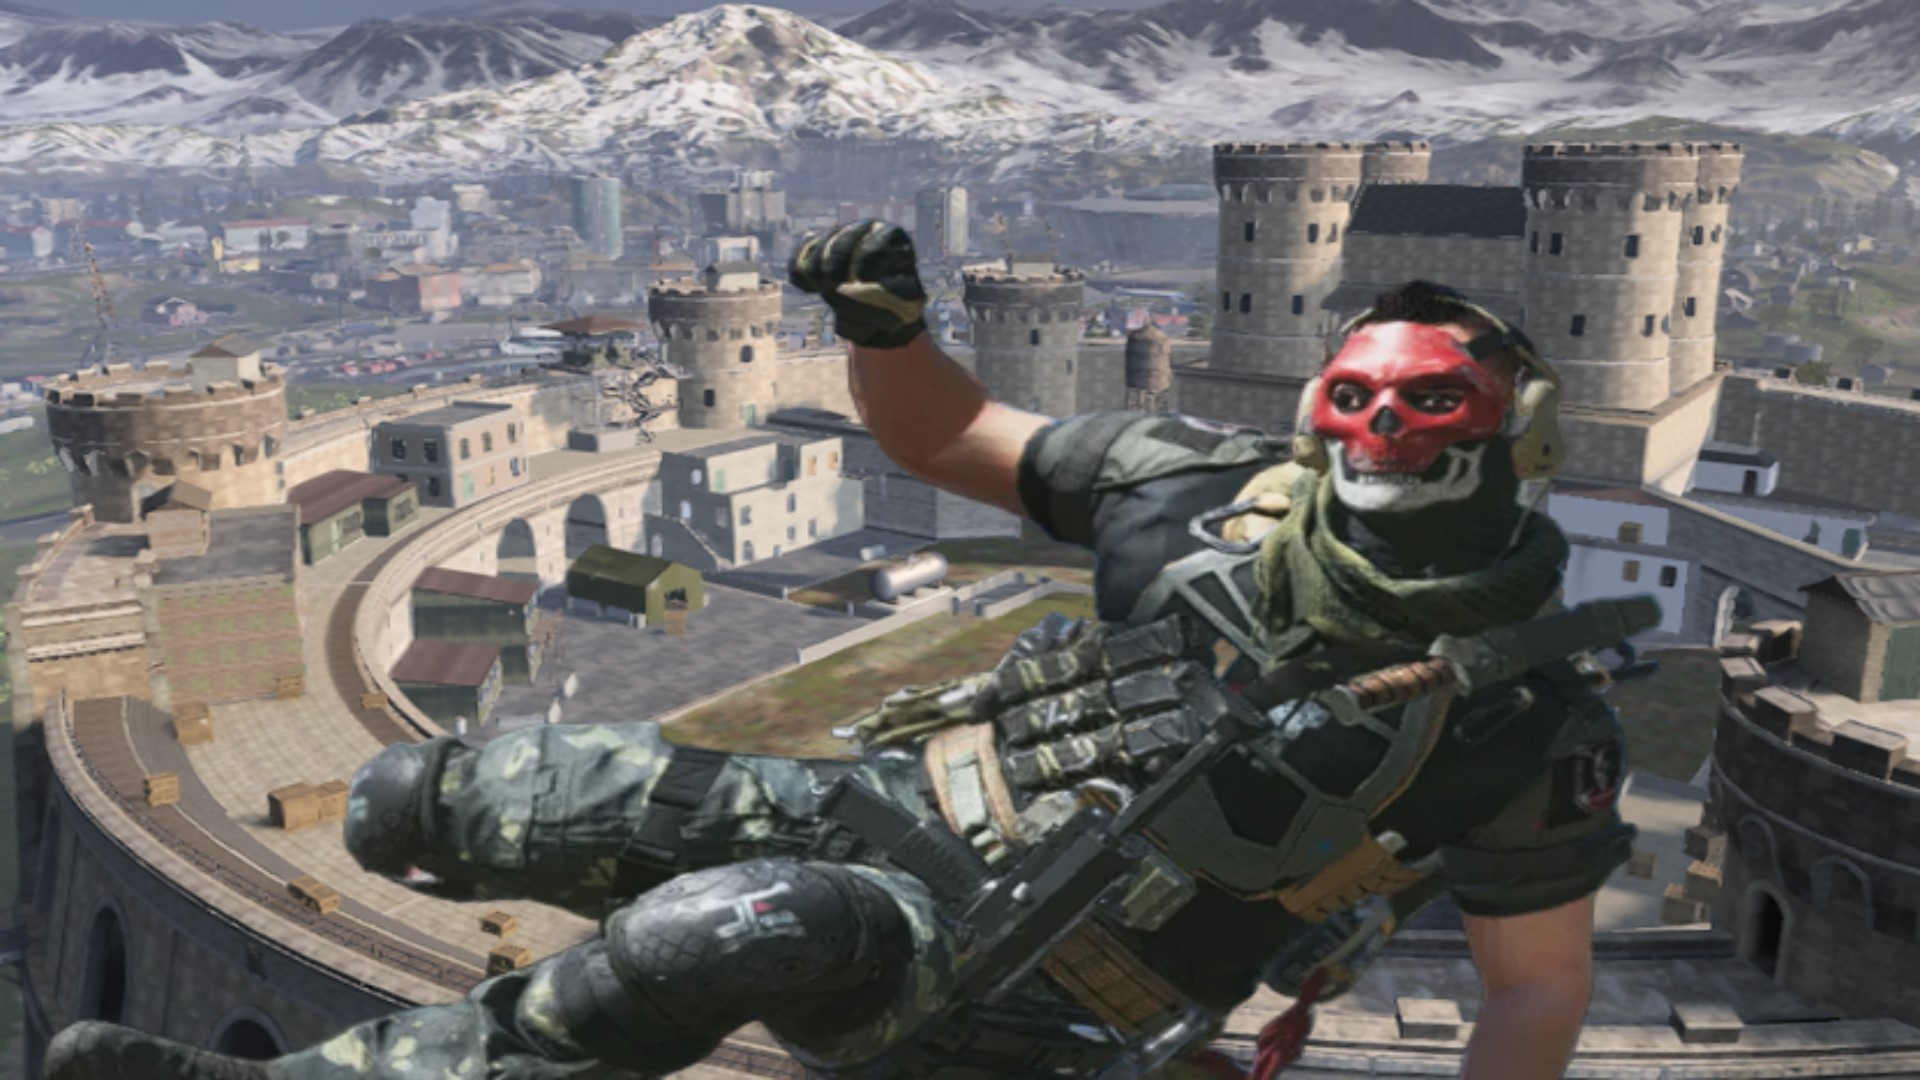 Download Warzone 2: como baixar o battle royale da Activision, call of  duty